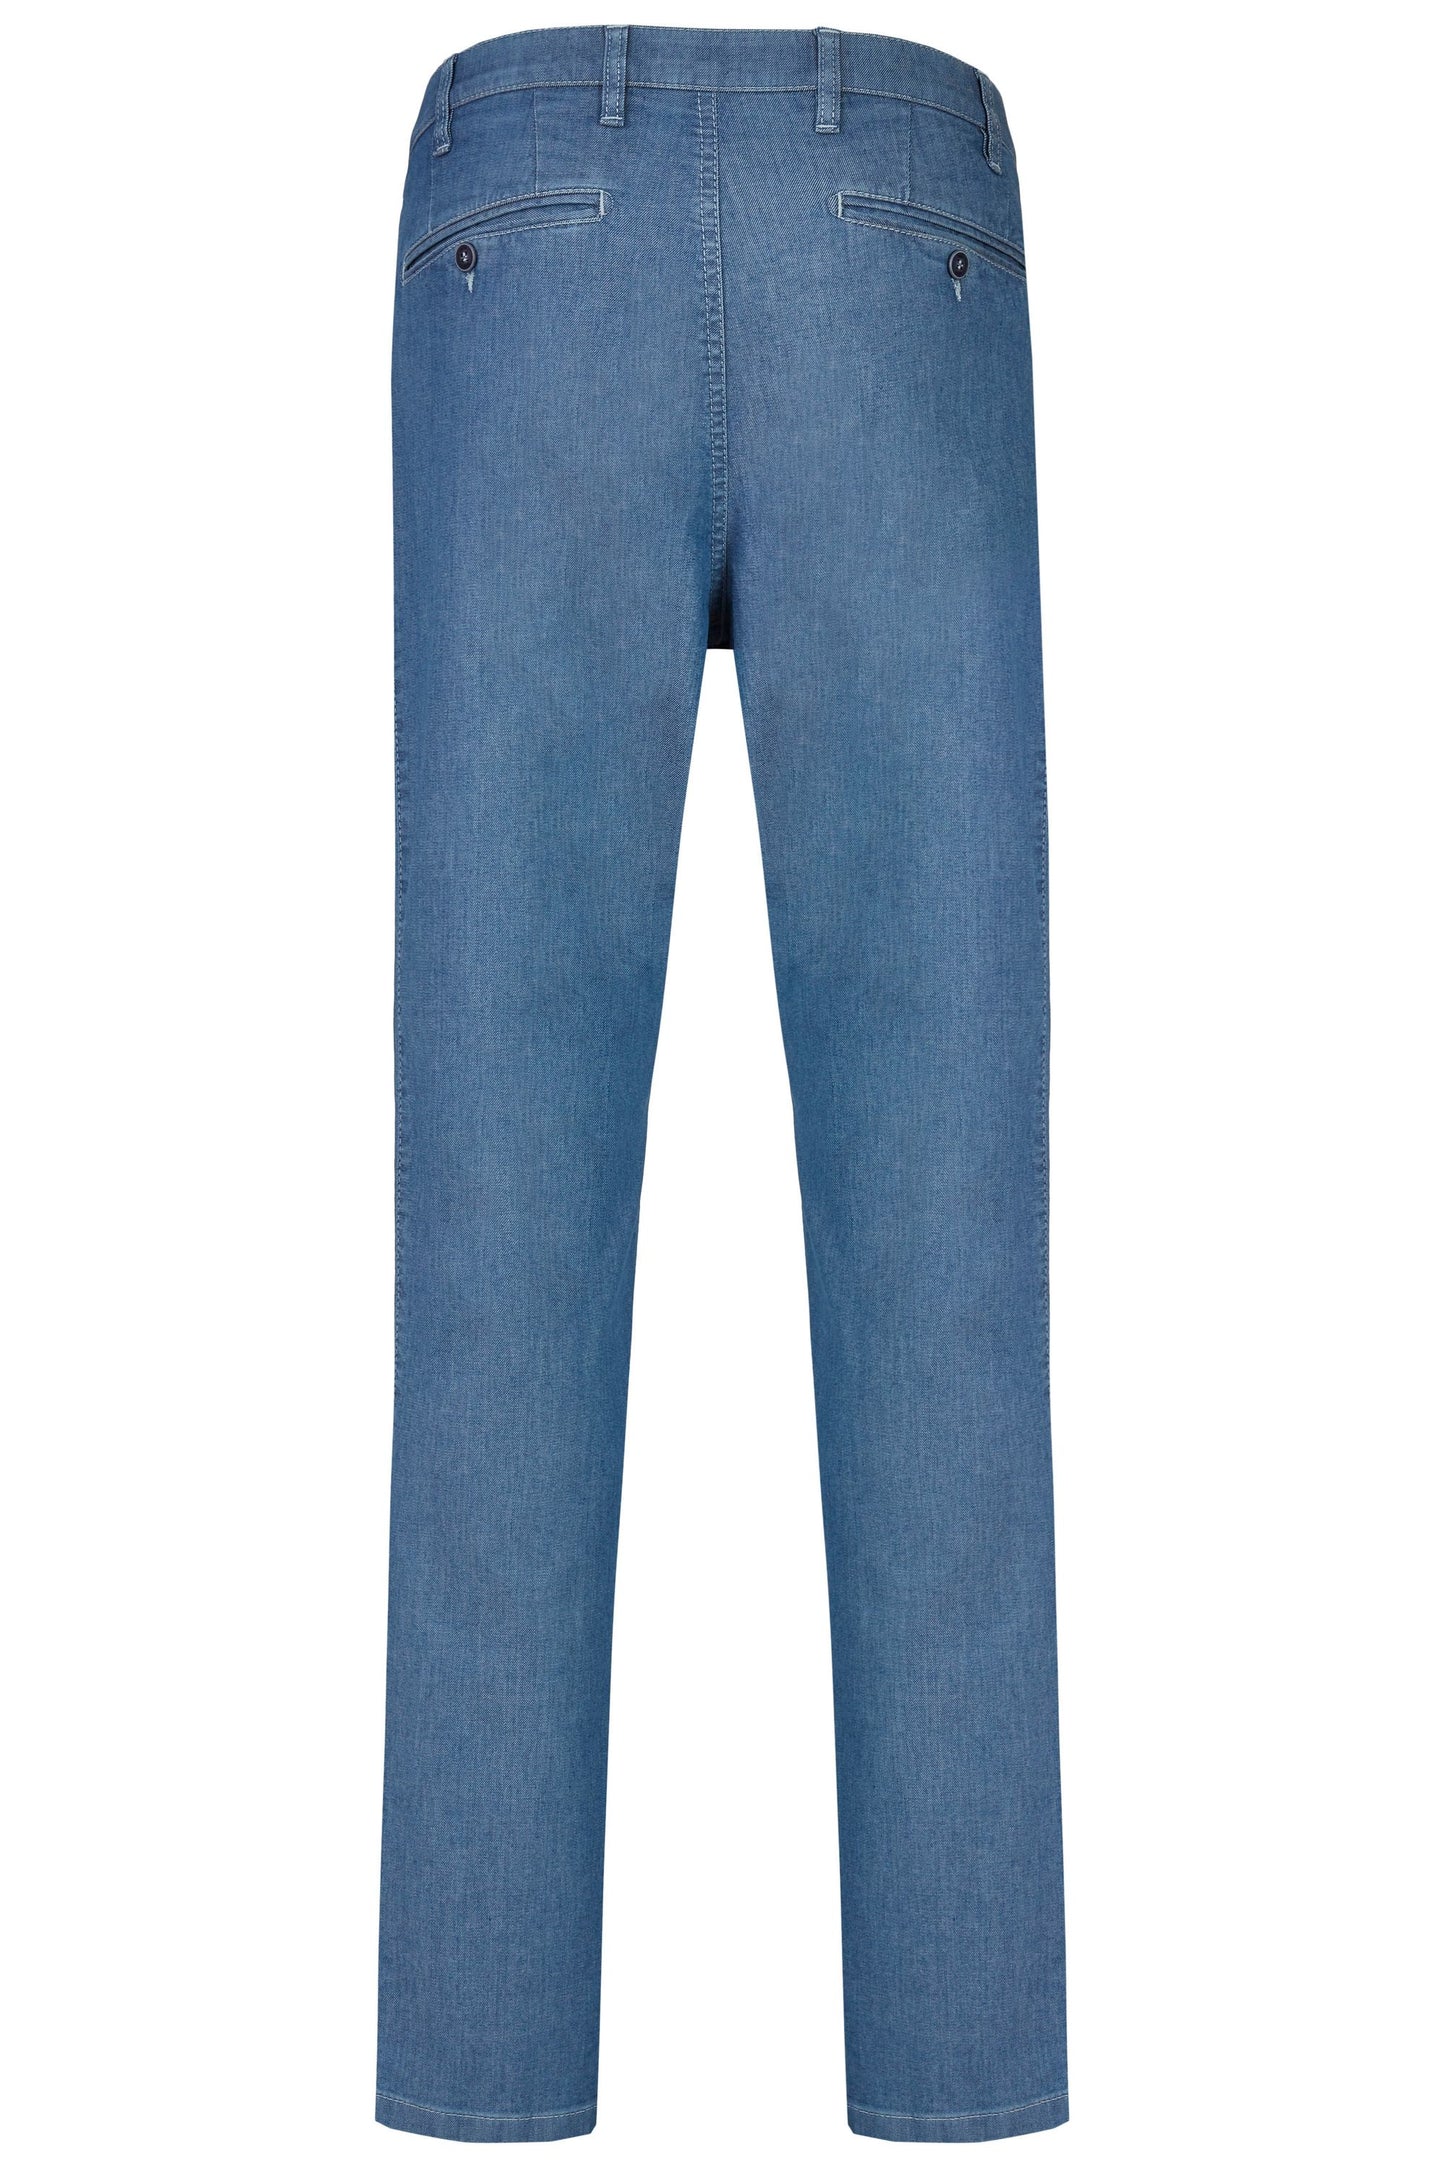 aubi Perfect Fit Herren Sommer Jeans Hose Stretch aus Baumwolle High Flex Modell 577